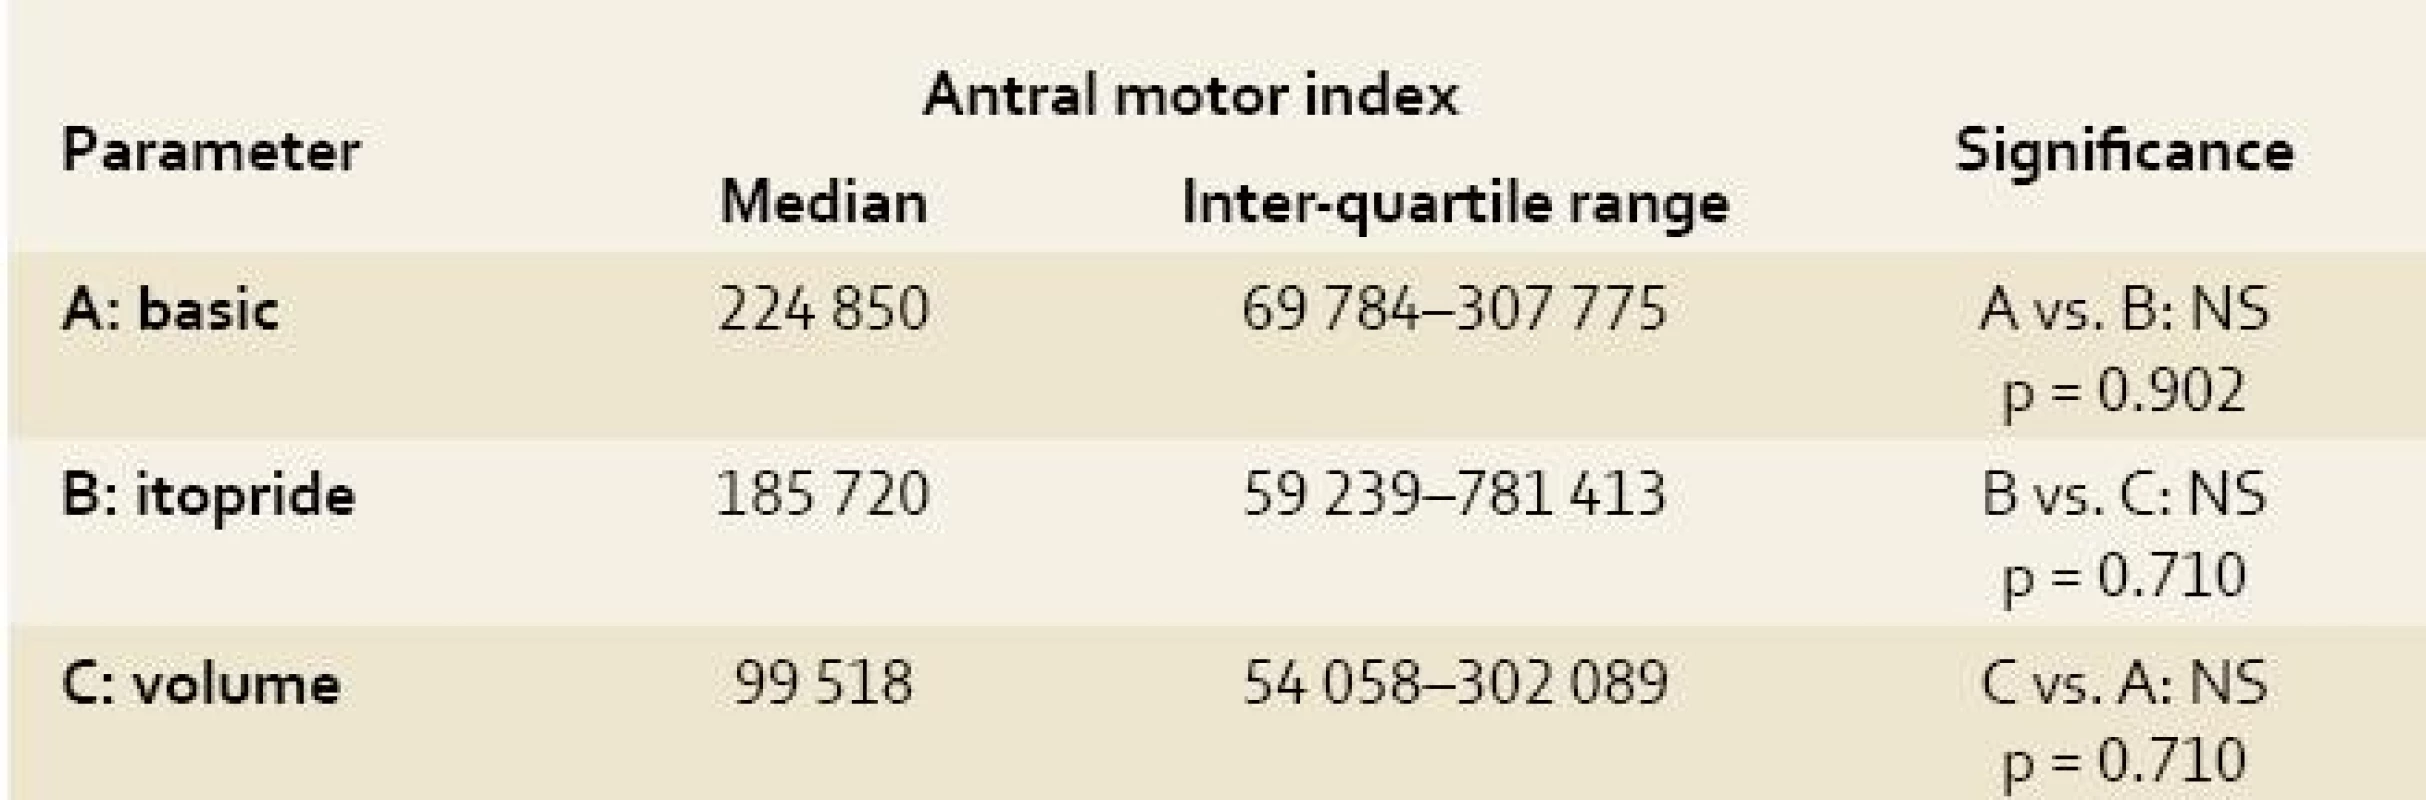 Antral motor index of electrogastrography recording in experimental pigs.
Tab. 2. Motorický index žaludečního antra na elektrogastrografickém záznamu u experimentálních prasat.